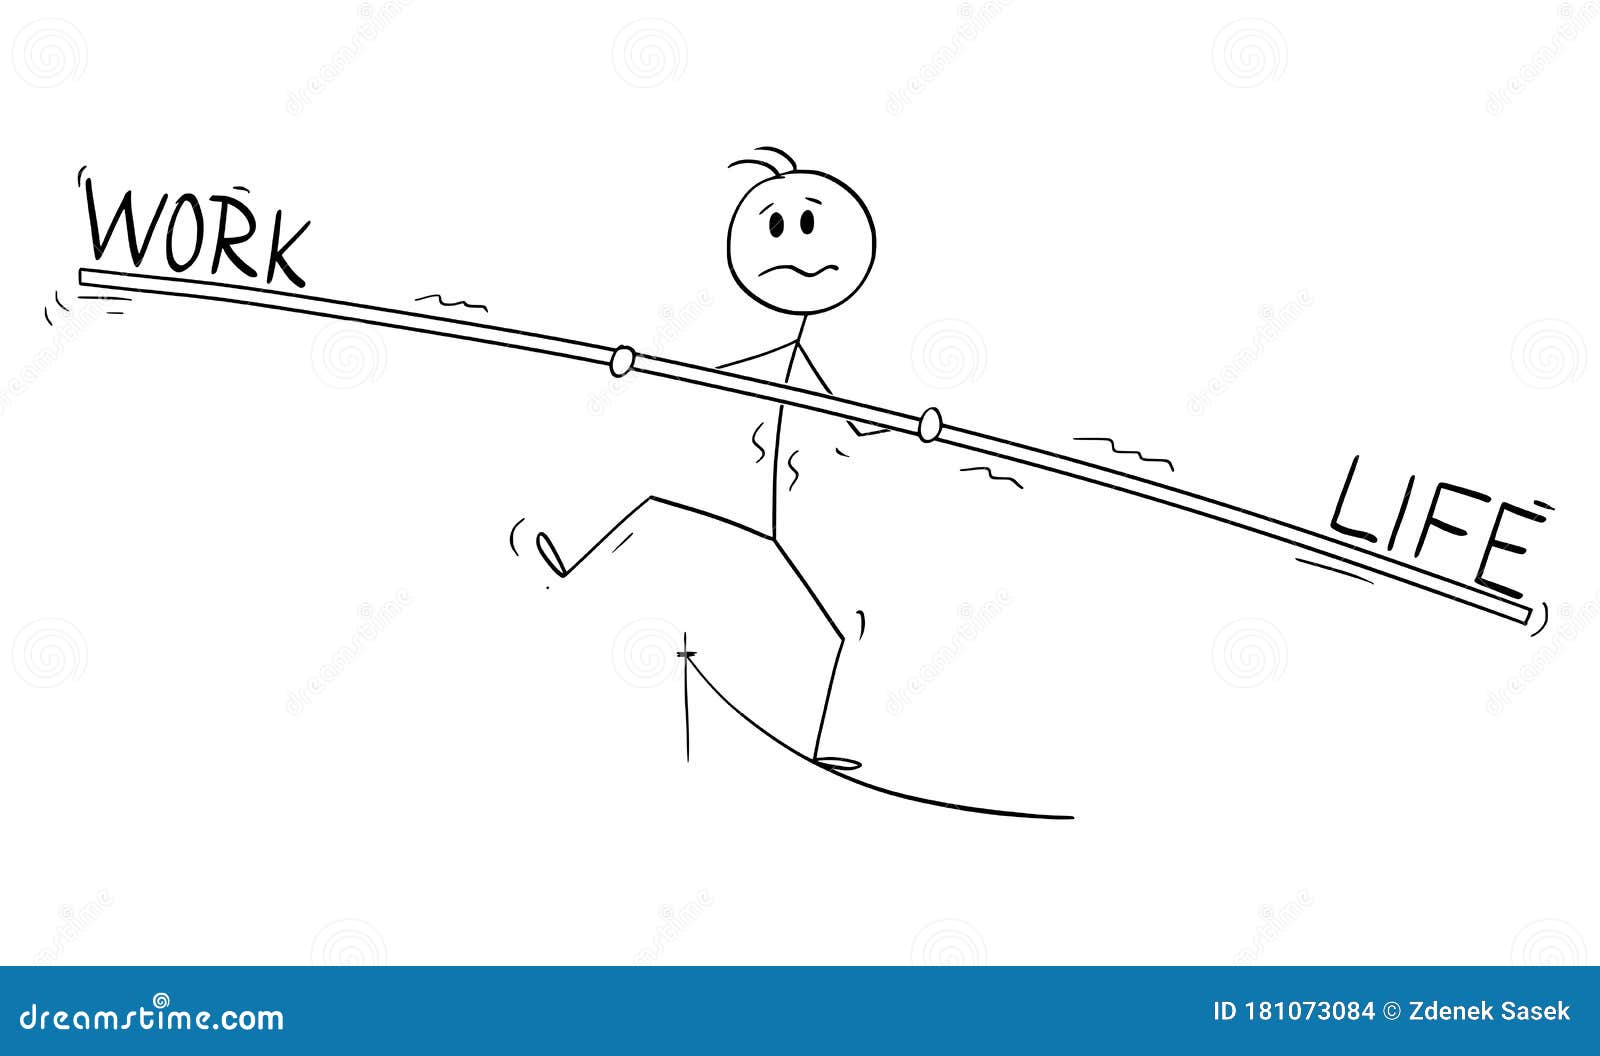 Vector Cartoon Illustration of Tightrope Walker, Man or